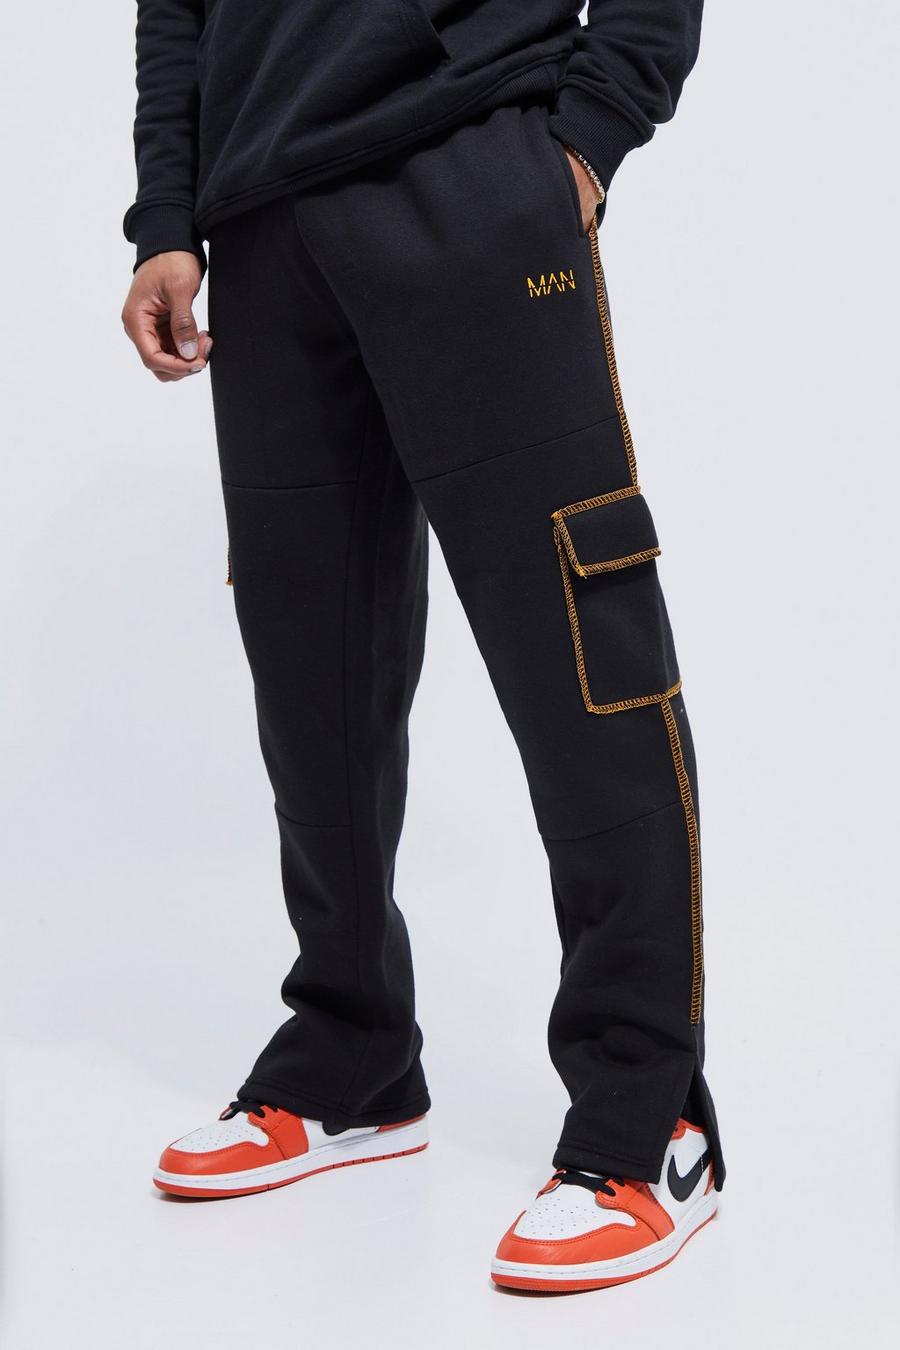 שחור negro מכנסי ריצה דגמ"ח עם שסע במכפלת ותפרים בצבעים מנוגדים image number 1